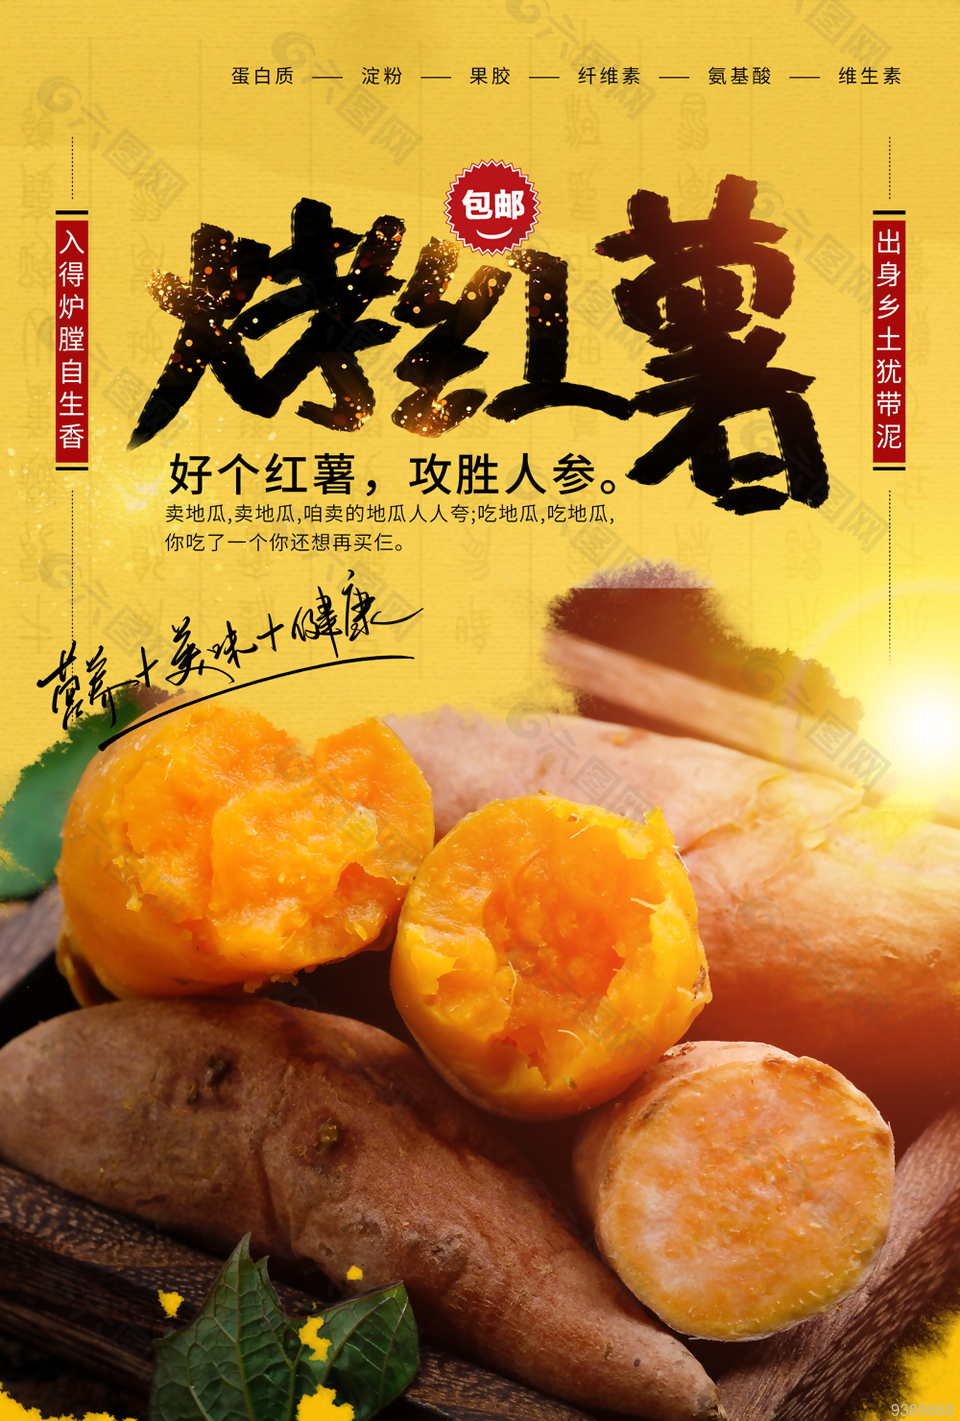 冬日烤红薯美食宣传海报